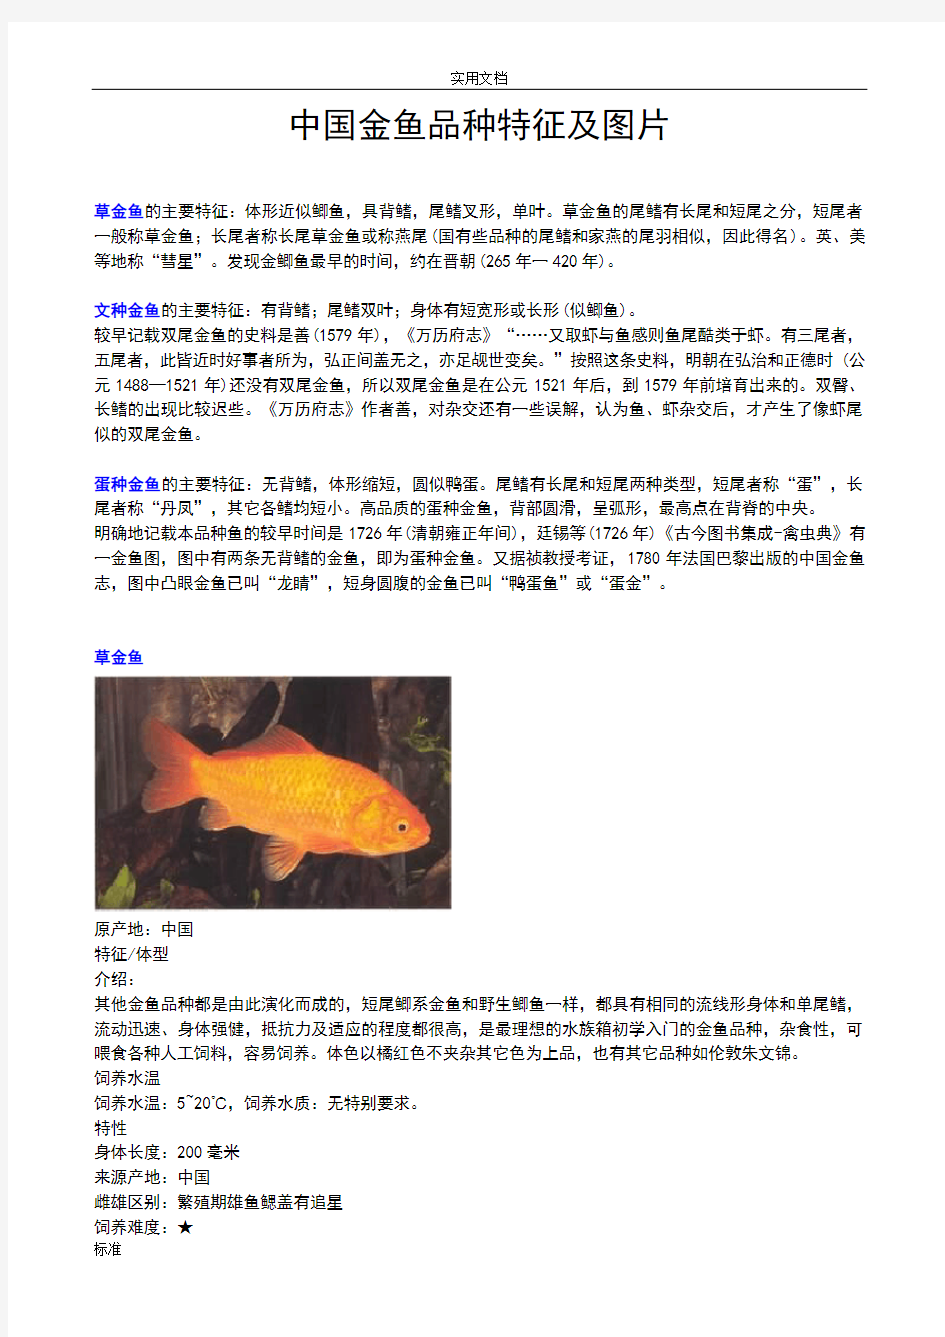 (全)金鱼种类及图片